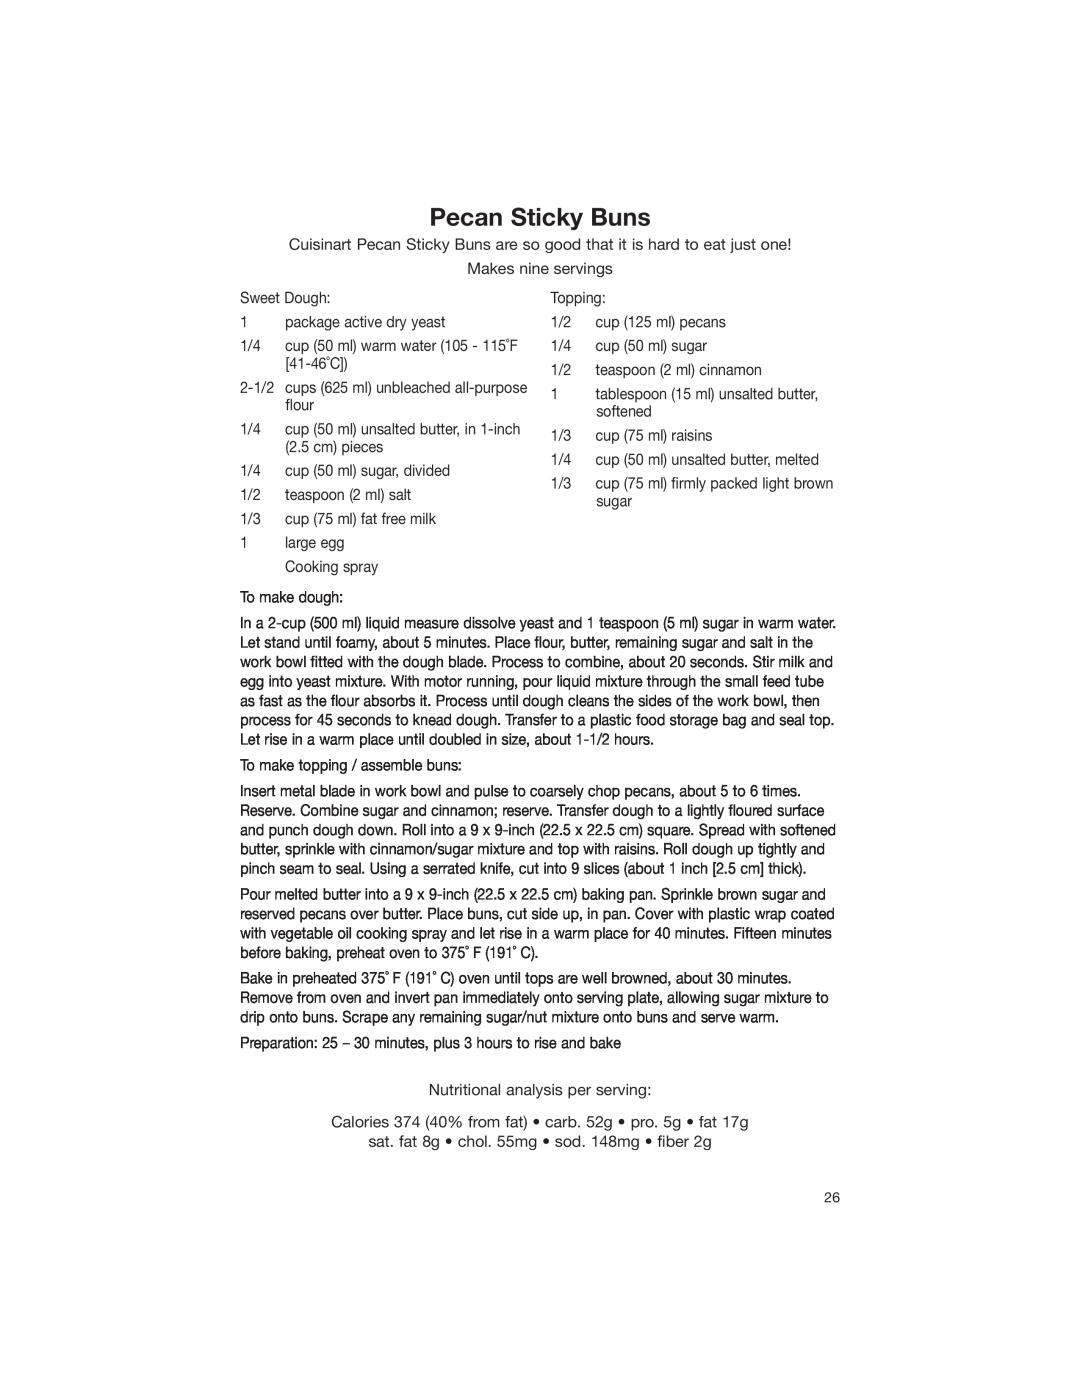 Cuisinart DLC-2007NC manual Pecan Sticky Buns 